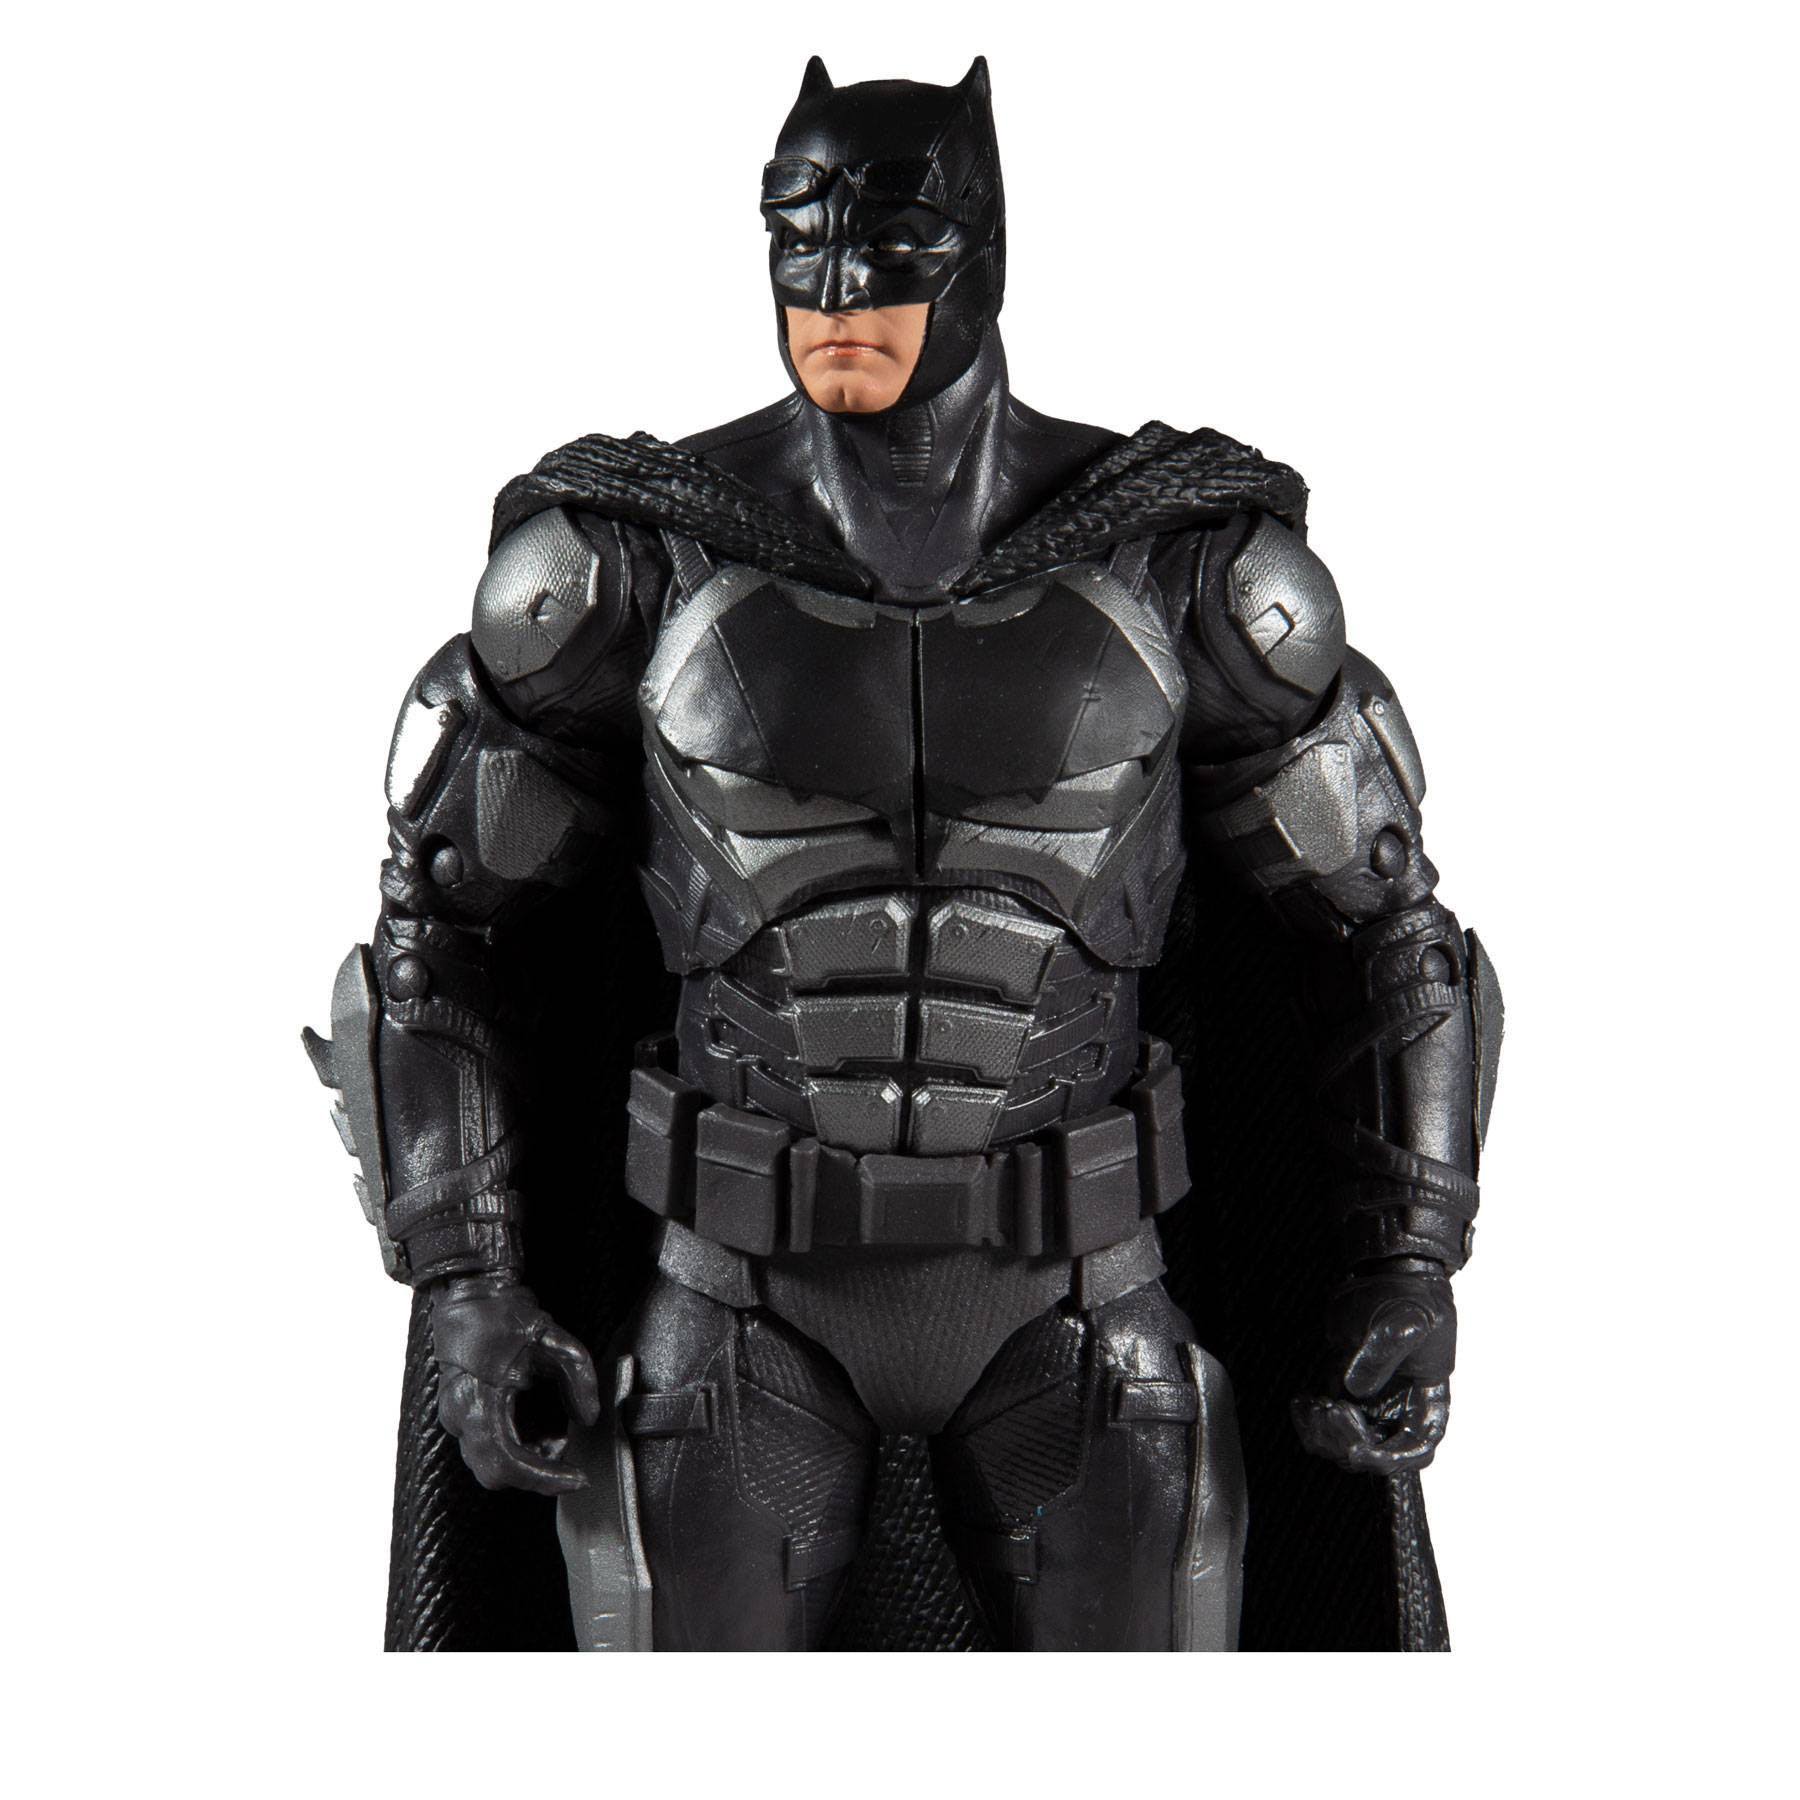 DC Justice League Movie Actionfigur Batman 18 cm MCF15092-6 787926150926